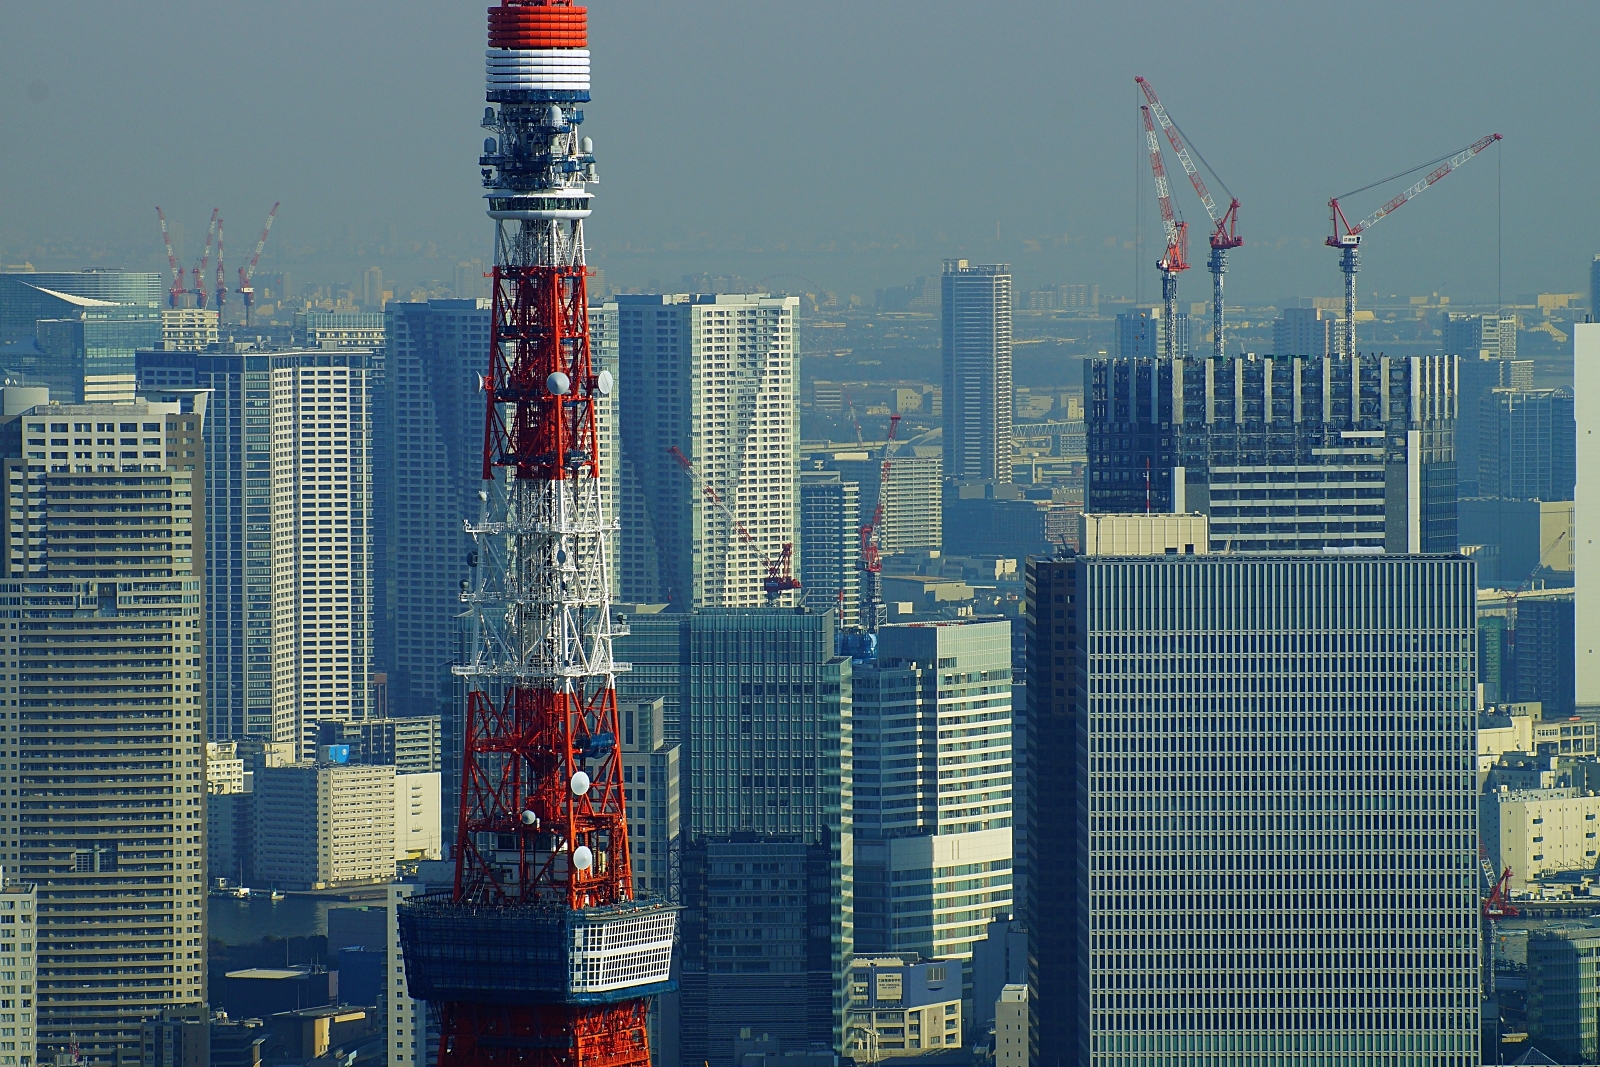 六本木ヒルズ森タワー展望台 東京シティビュー から見た東京都心の超高層ビル群 19 風景写真